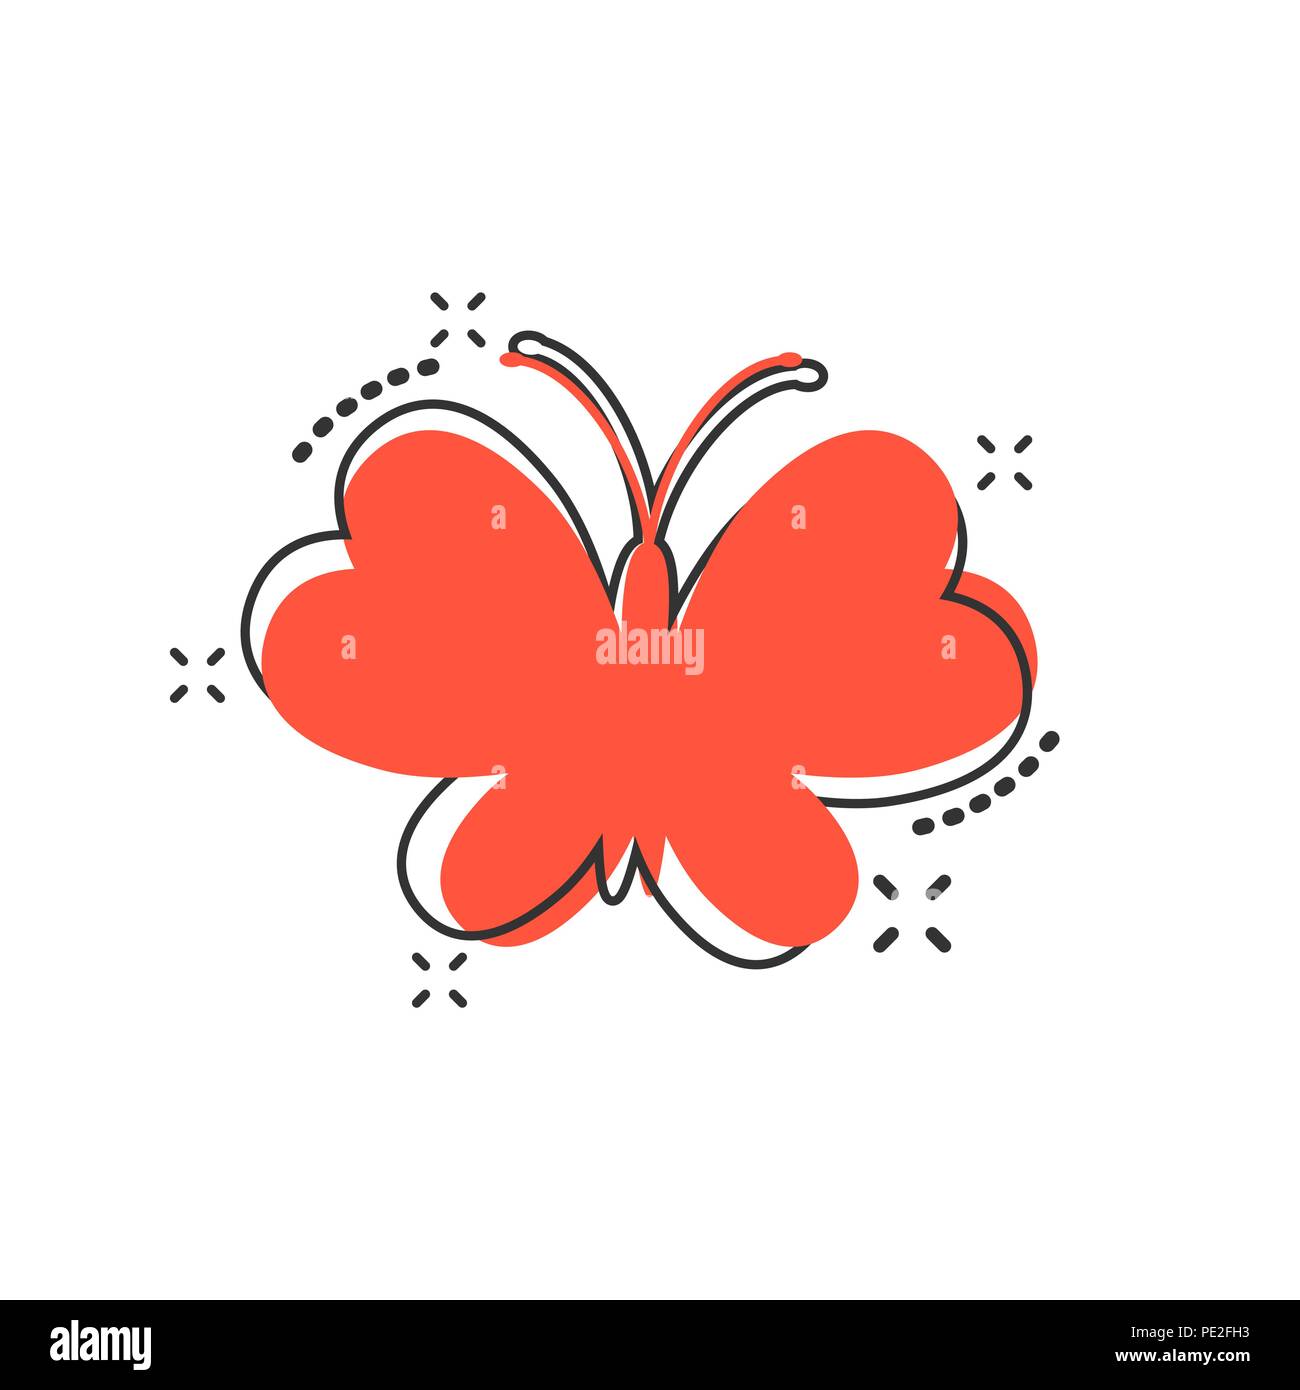 Vektor cartoon Schmetterling Symbol im Comic-stil. Insekt zeichen Abbildung Piktogramm. Schmetterling business splash Wirkung Konzept. Stock Vektor